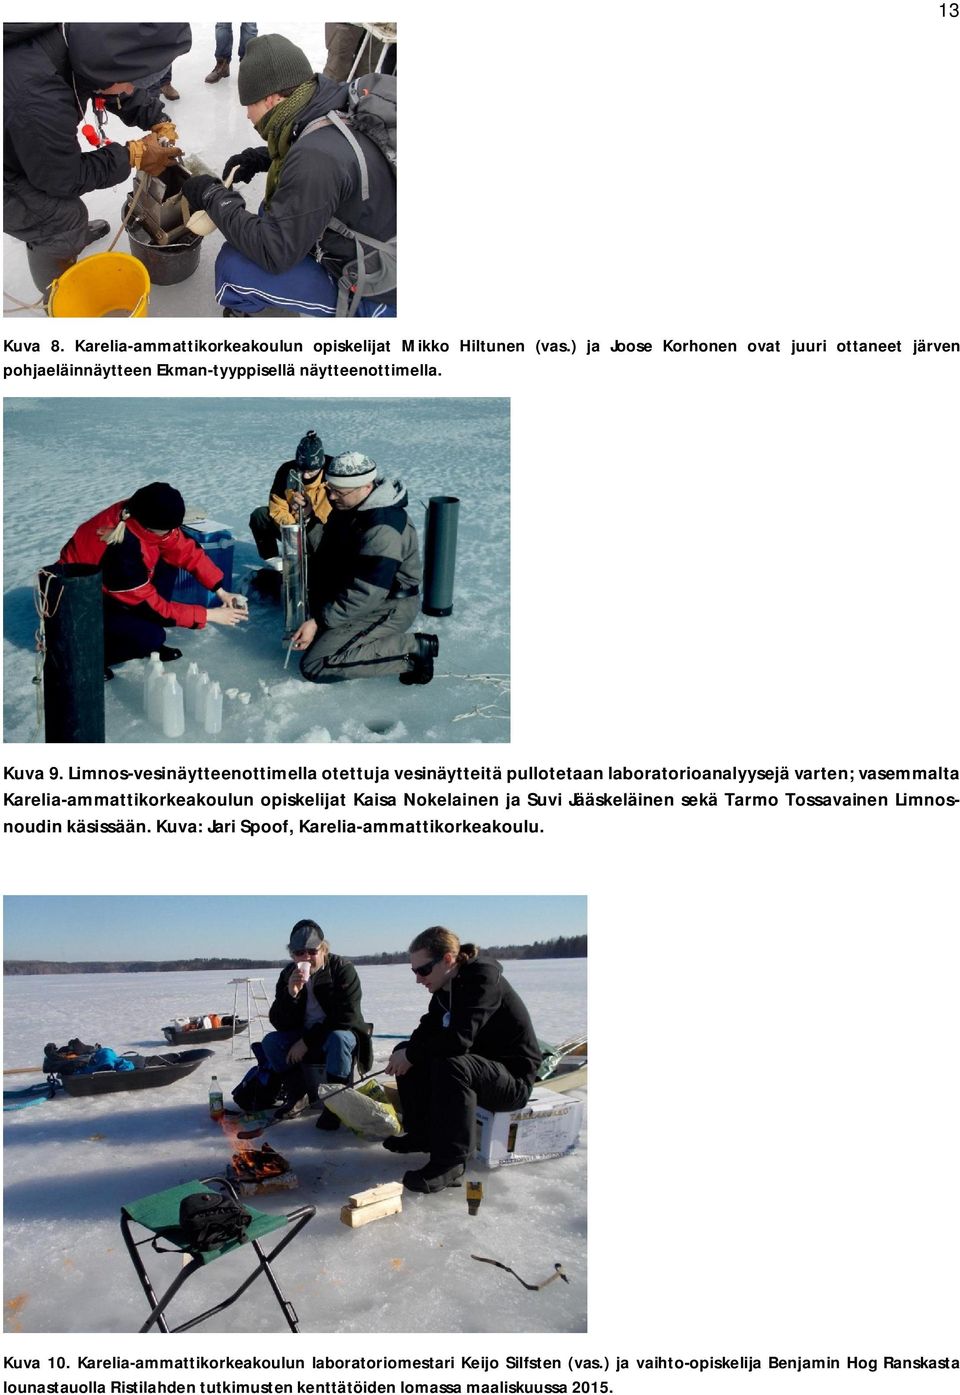 Limnos-vesinäytteenottimella otettuja vesinäytteitä pullotetaan laboratorioanalyysejä varten; vasemmalta Karelia-ammattikorkeakoulun opiskelijat Kaisa Nokelainen ja